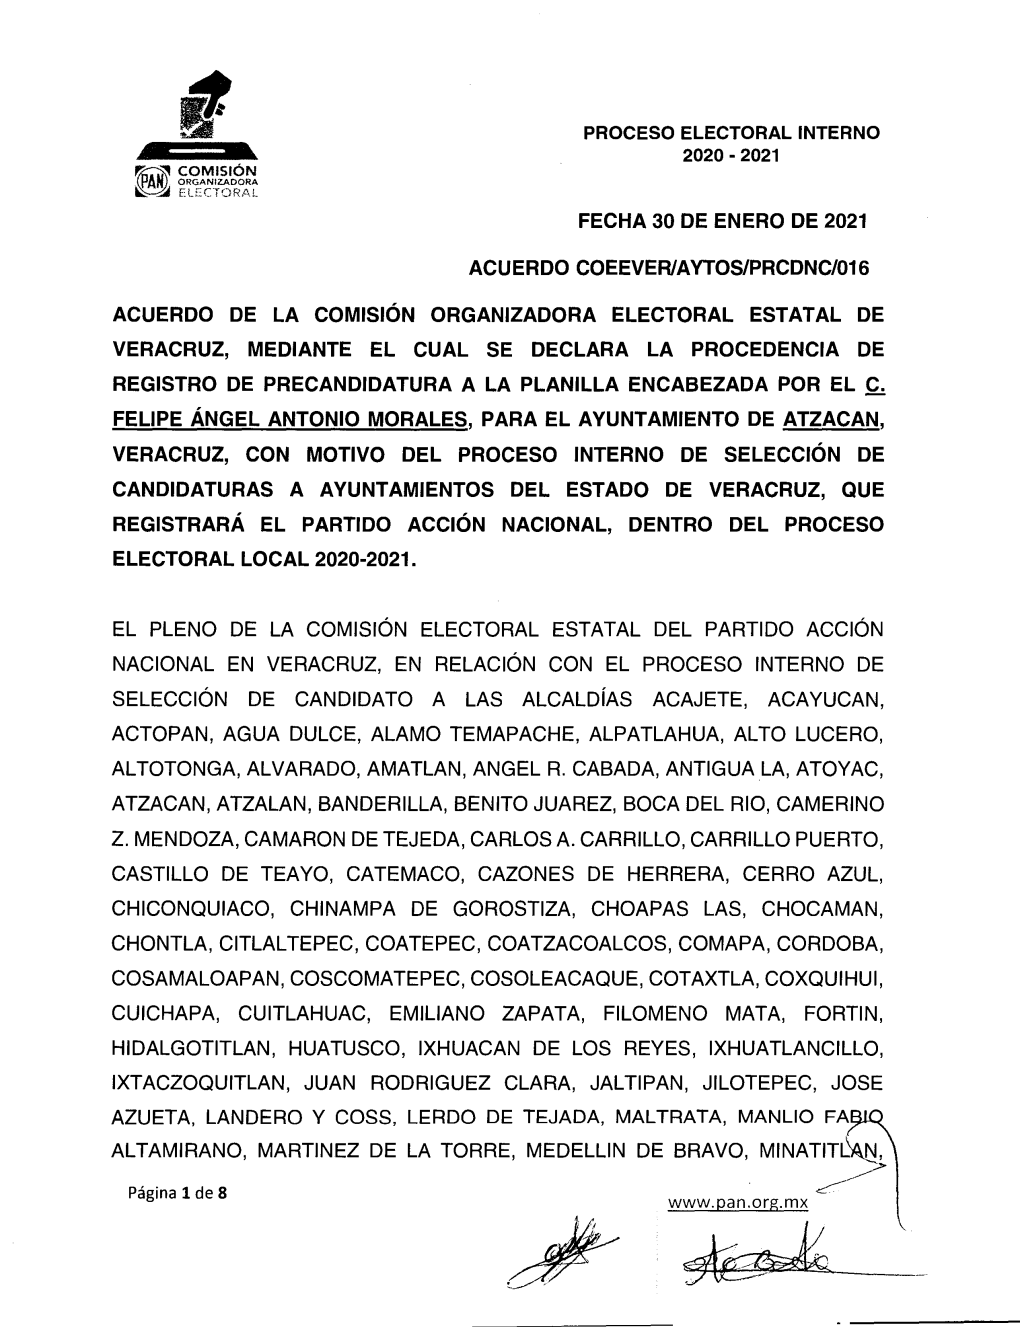 Procedencia Atzacan. Felipe A. Antonio Morales 1